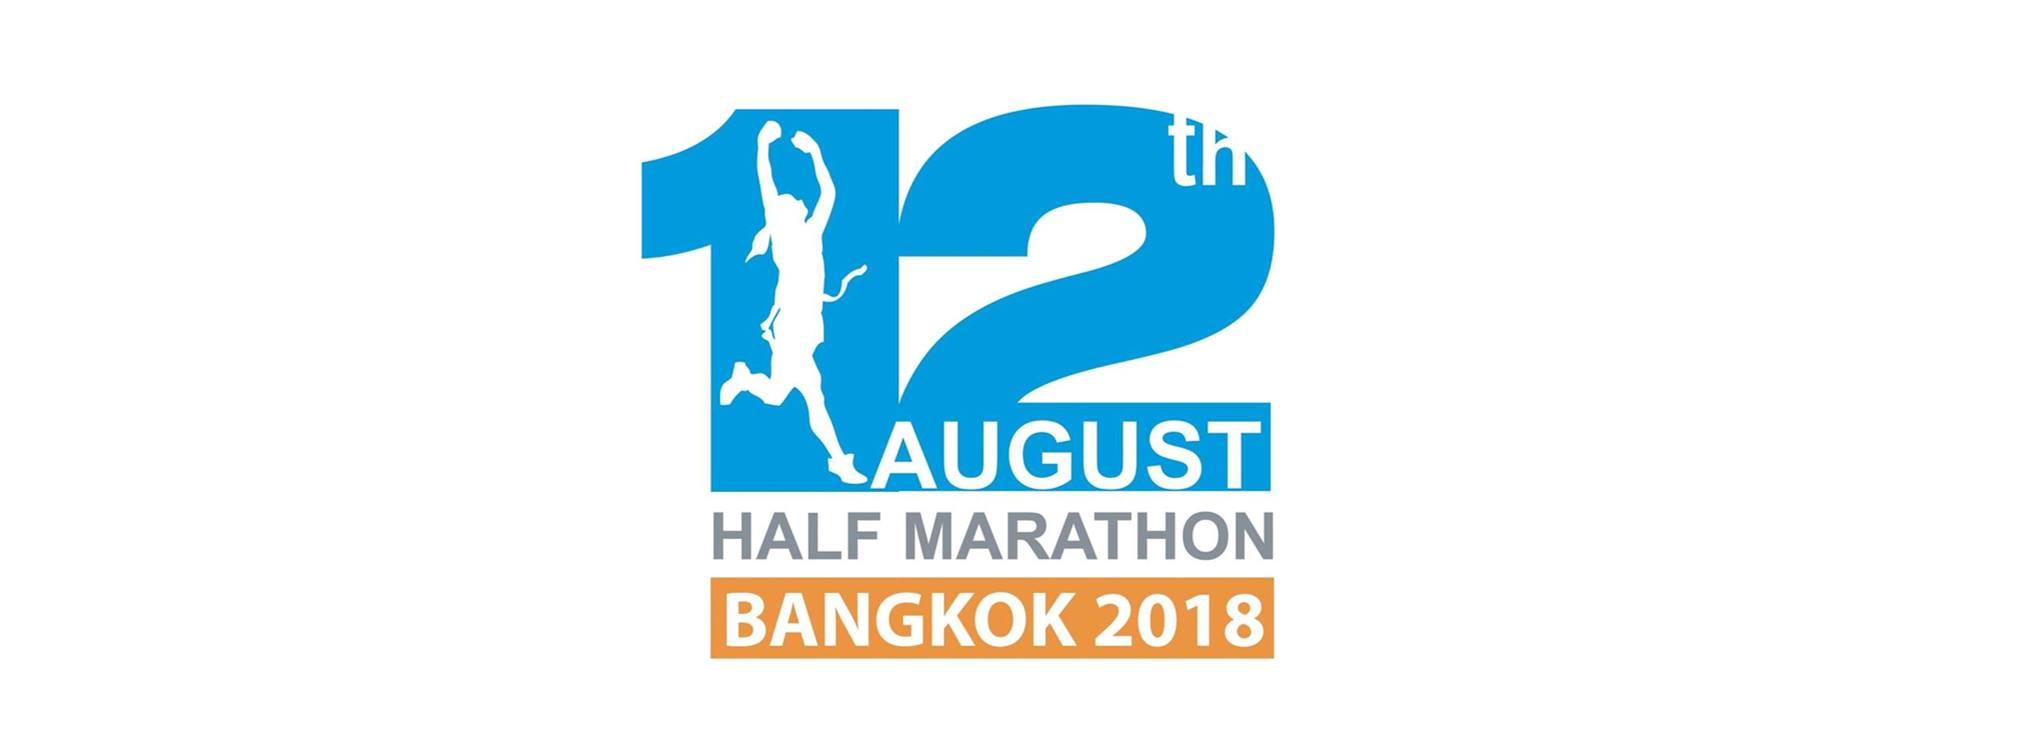 12th August Half Marathon 2018